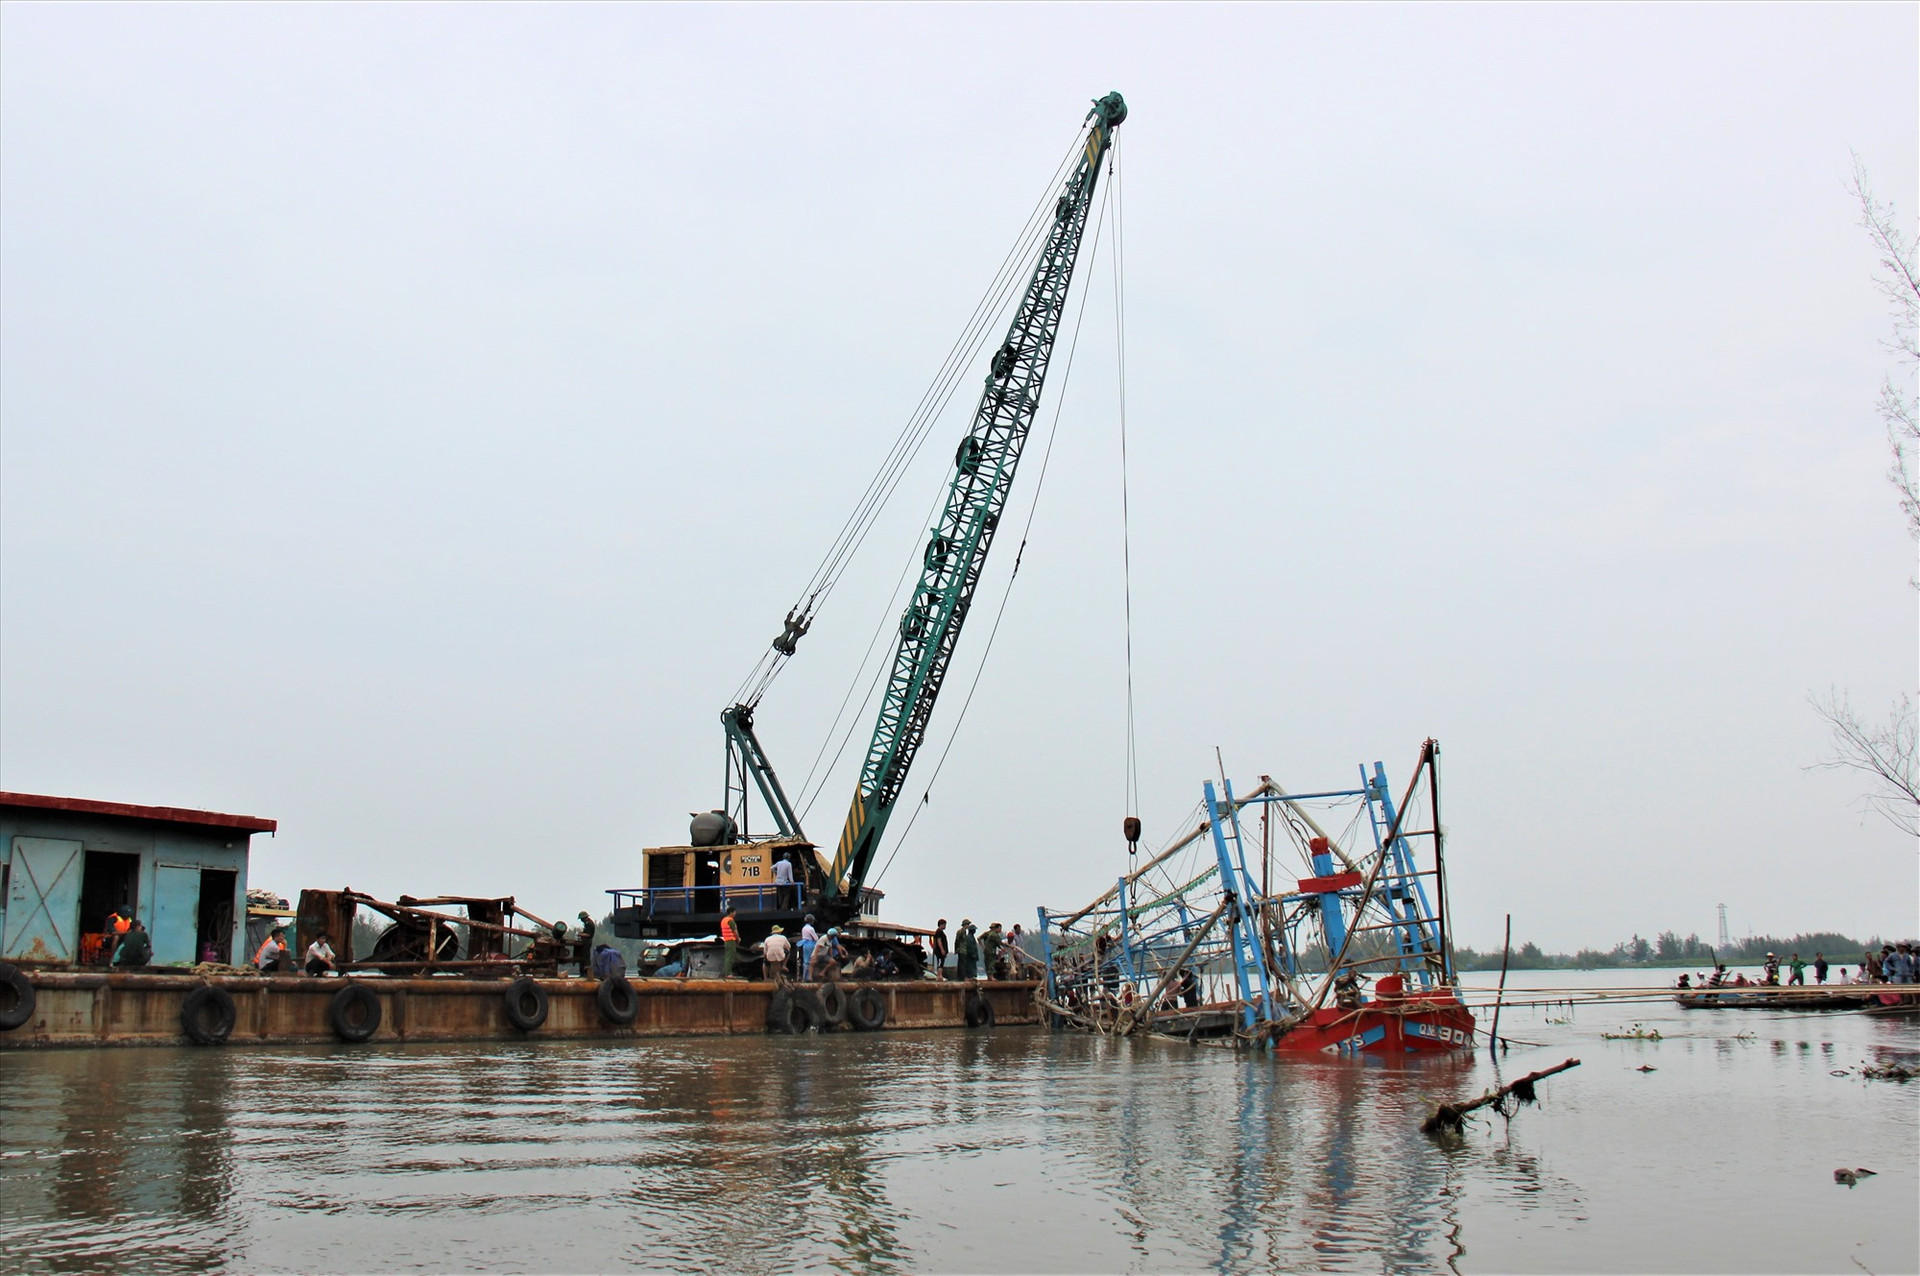 Ngành chức năng tỉnh Quảng Nam điều động 2 xà lan lớn để trục vớt con tàu số hiệu b QNa-90499 TS bị chìm khi đang neo đậu. Ảnh: HOÀI AN